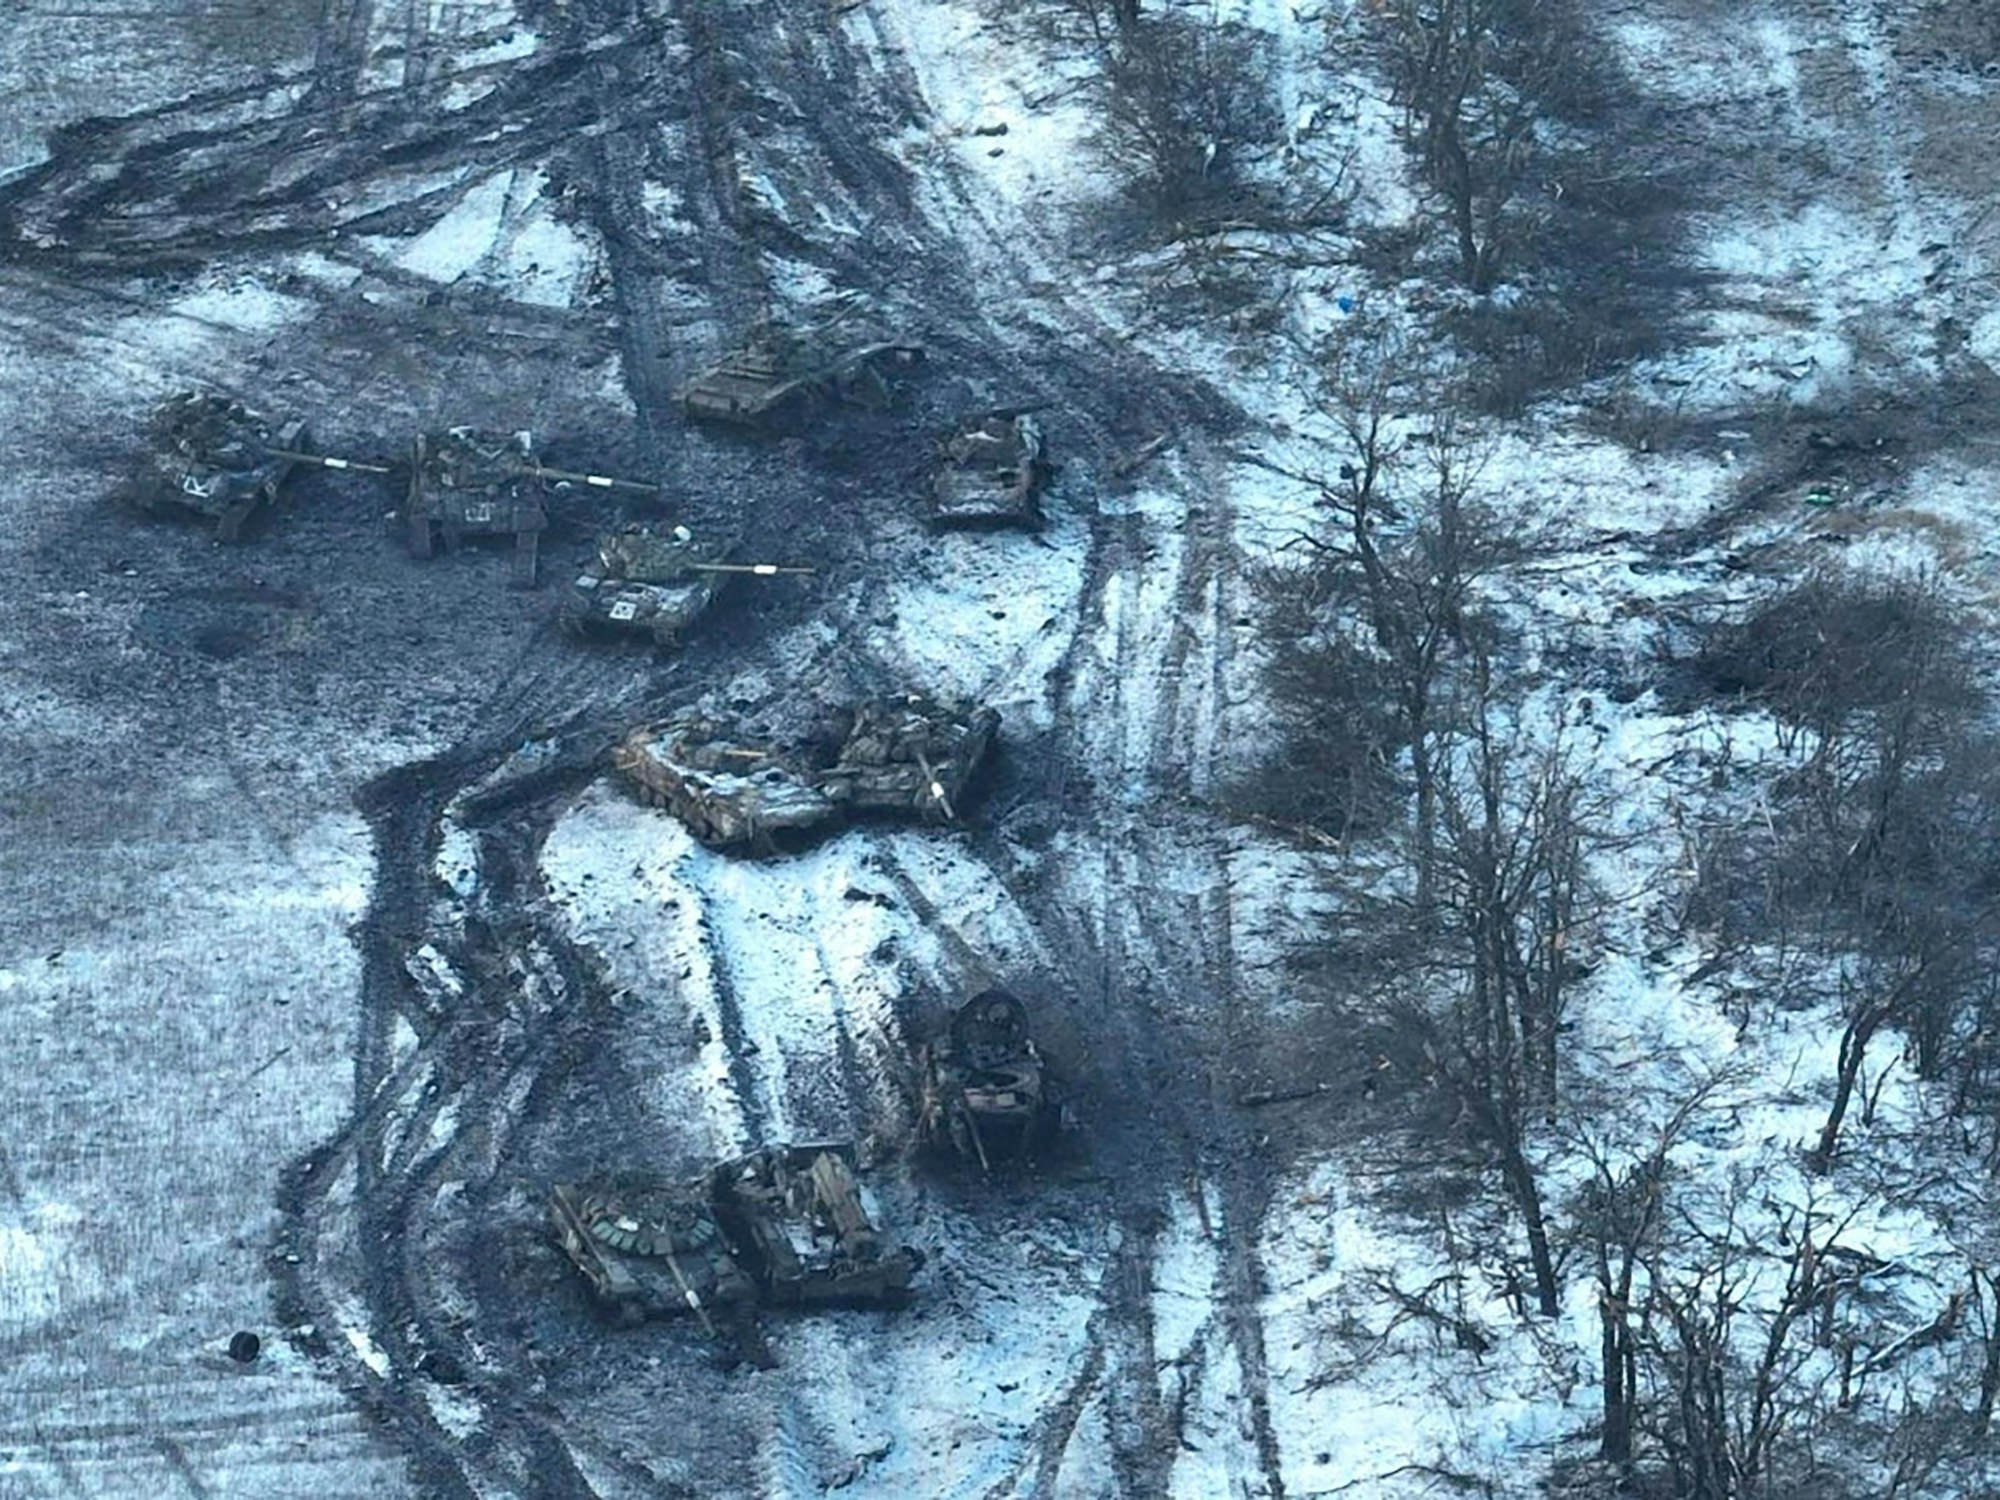 Dutzende zerstörte russische Panzer und gepanzerte Fahrzeuge stehen auf einem Feld bei Wuhledar, nachdem ein Angriffsversuch russischer Truppen gescheitert ist. Die ukrainische Seite zählt mindestens 31 zerstörte Fahrzeuge, darunter 13 Panzer (vor allem T-72B3), mehrere Schützenfahrzeuge und Truppentransporter.